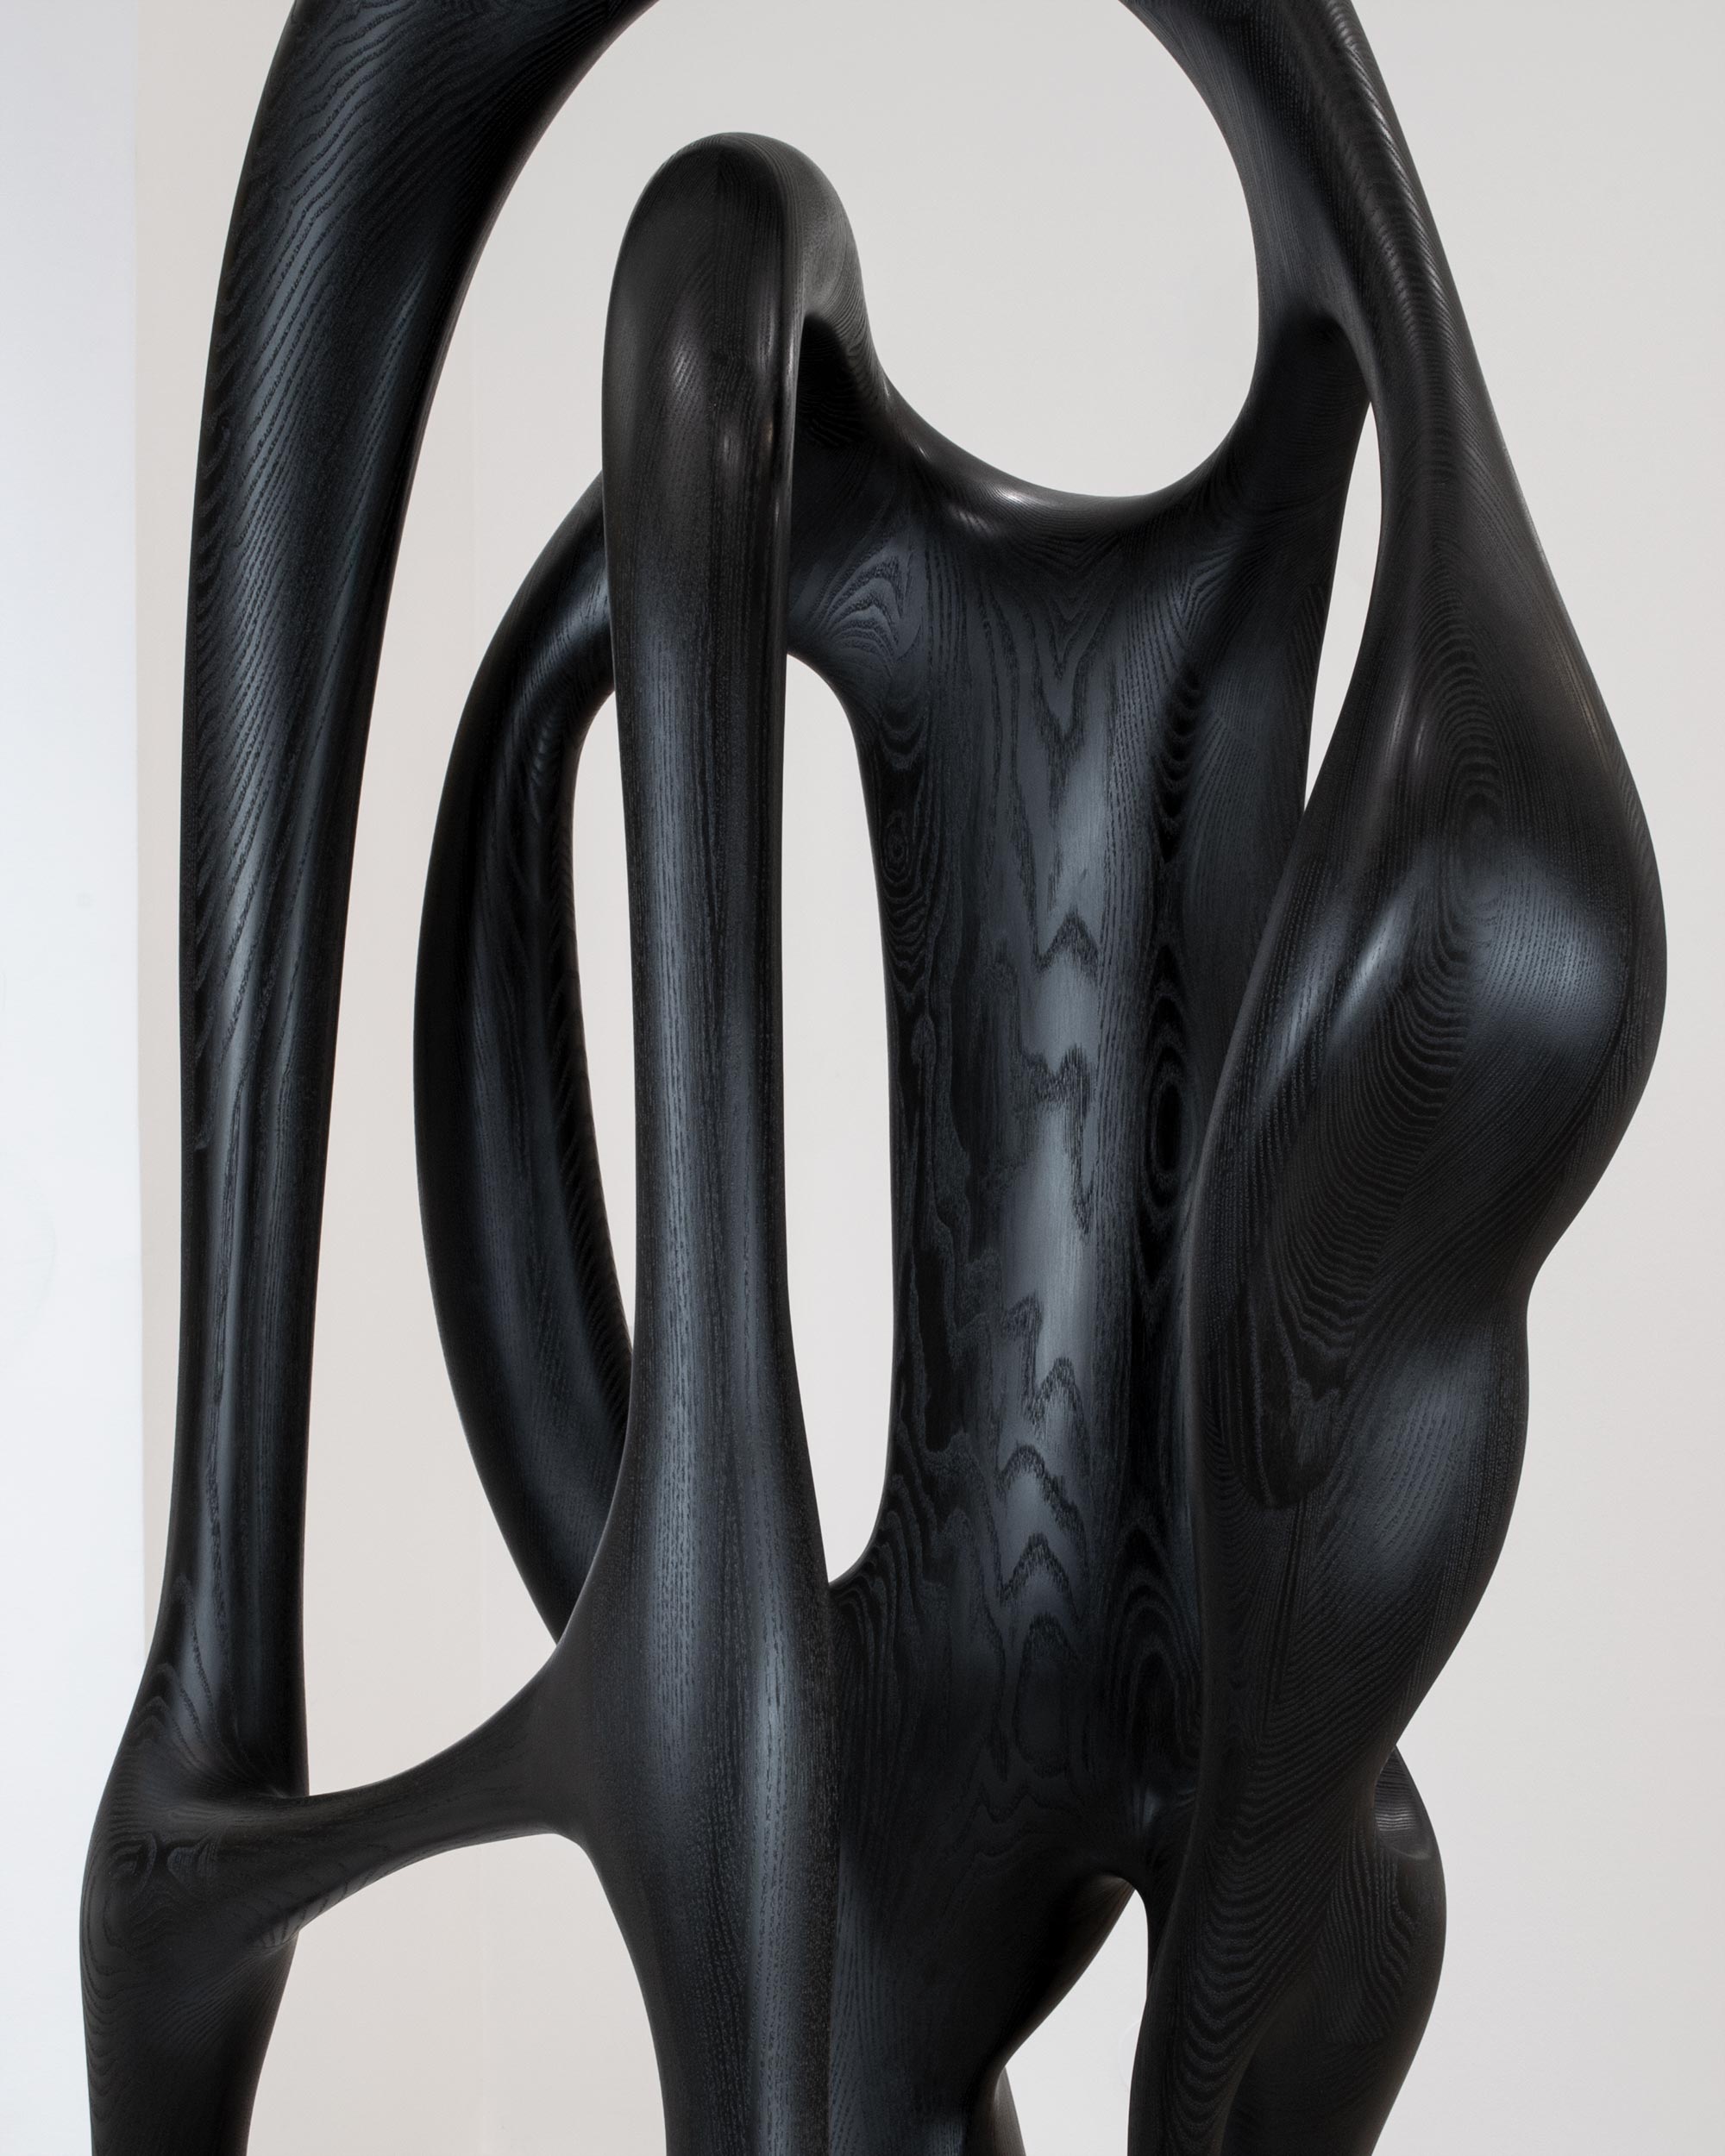 Maxime Goléo - Art - contemporain - galerie d'art - galerie - bois - frêne - teinte noire - sculpture - organique - nature - design - designer - artiste - sensuel - courbe